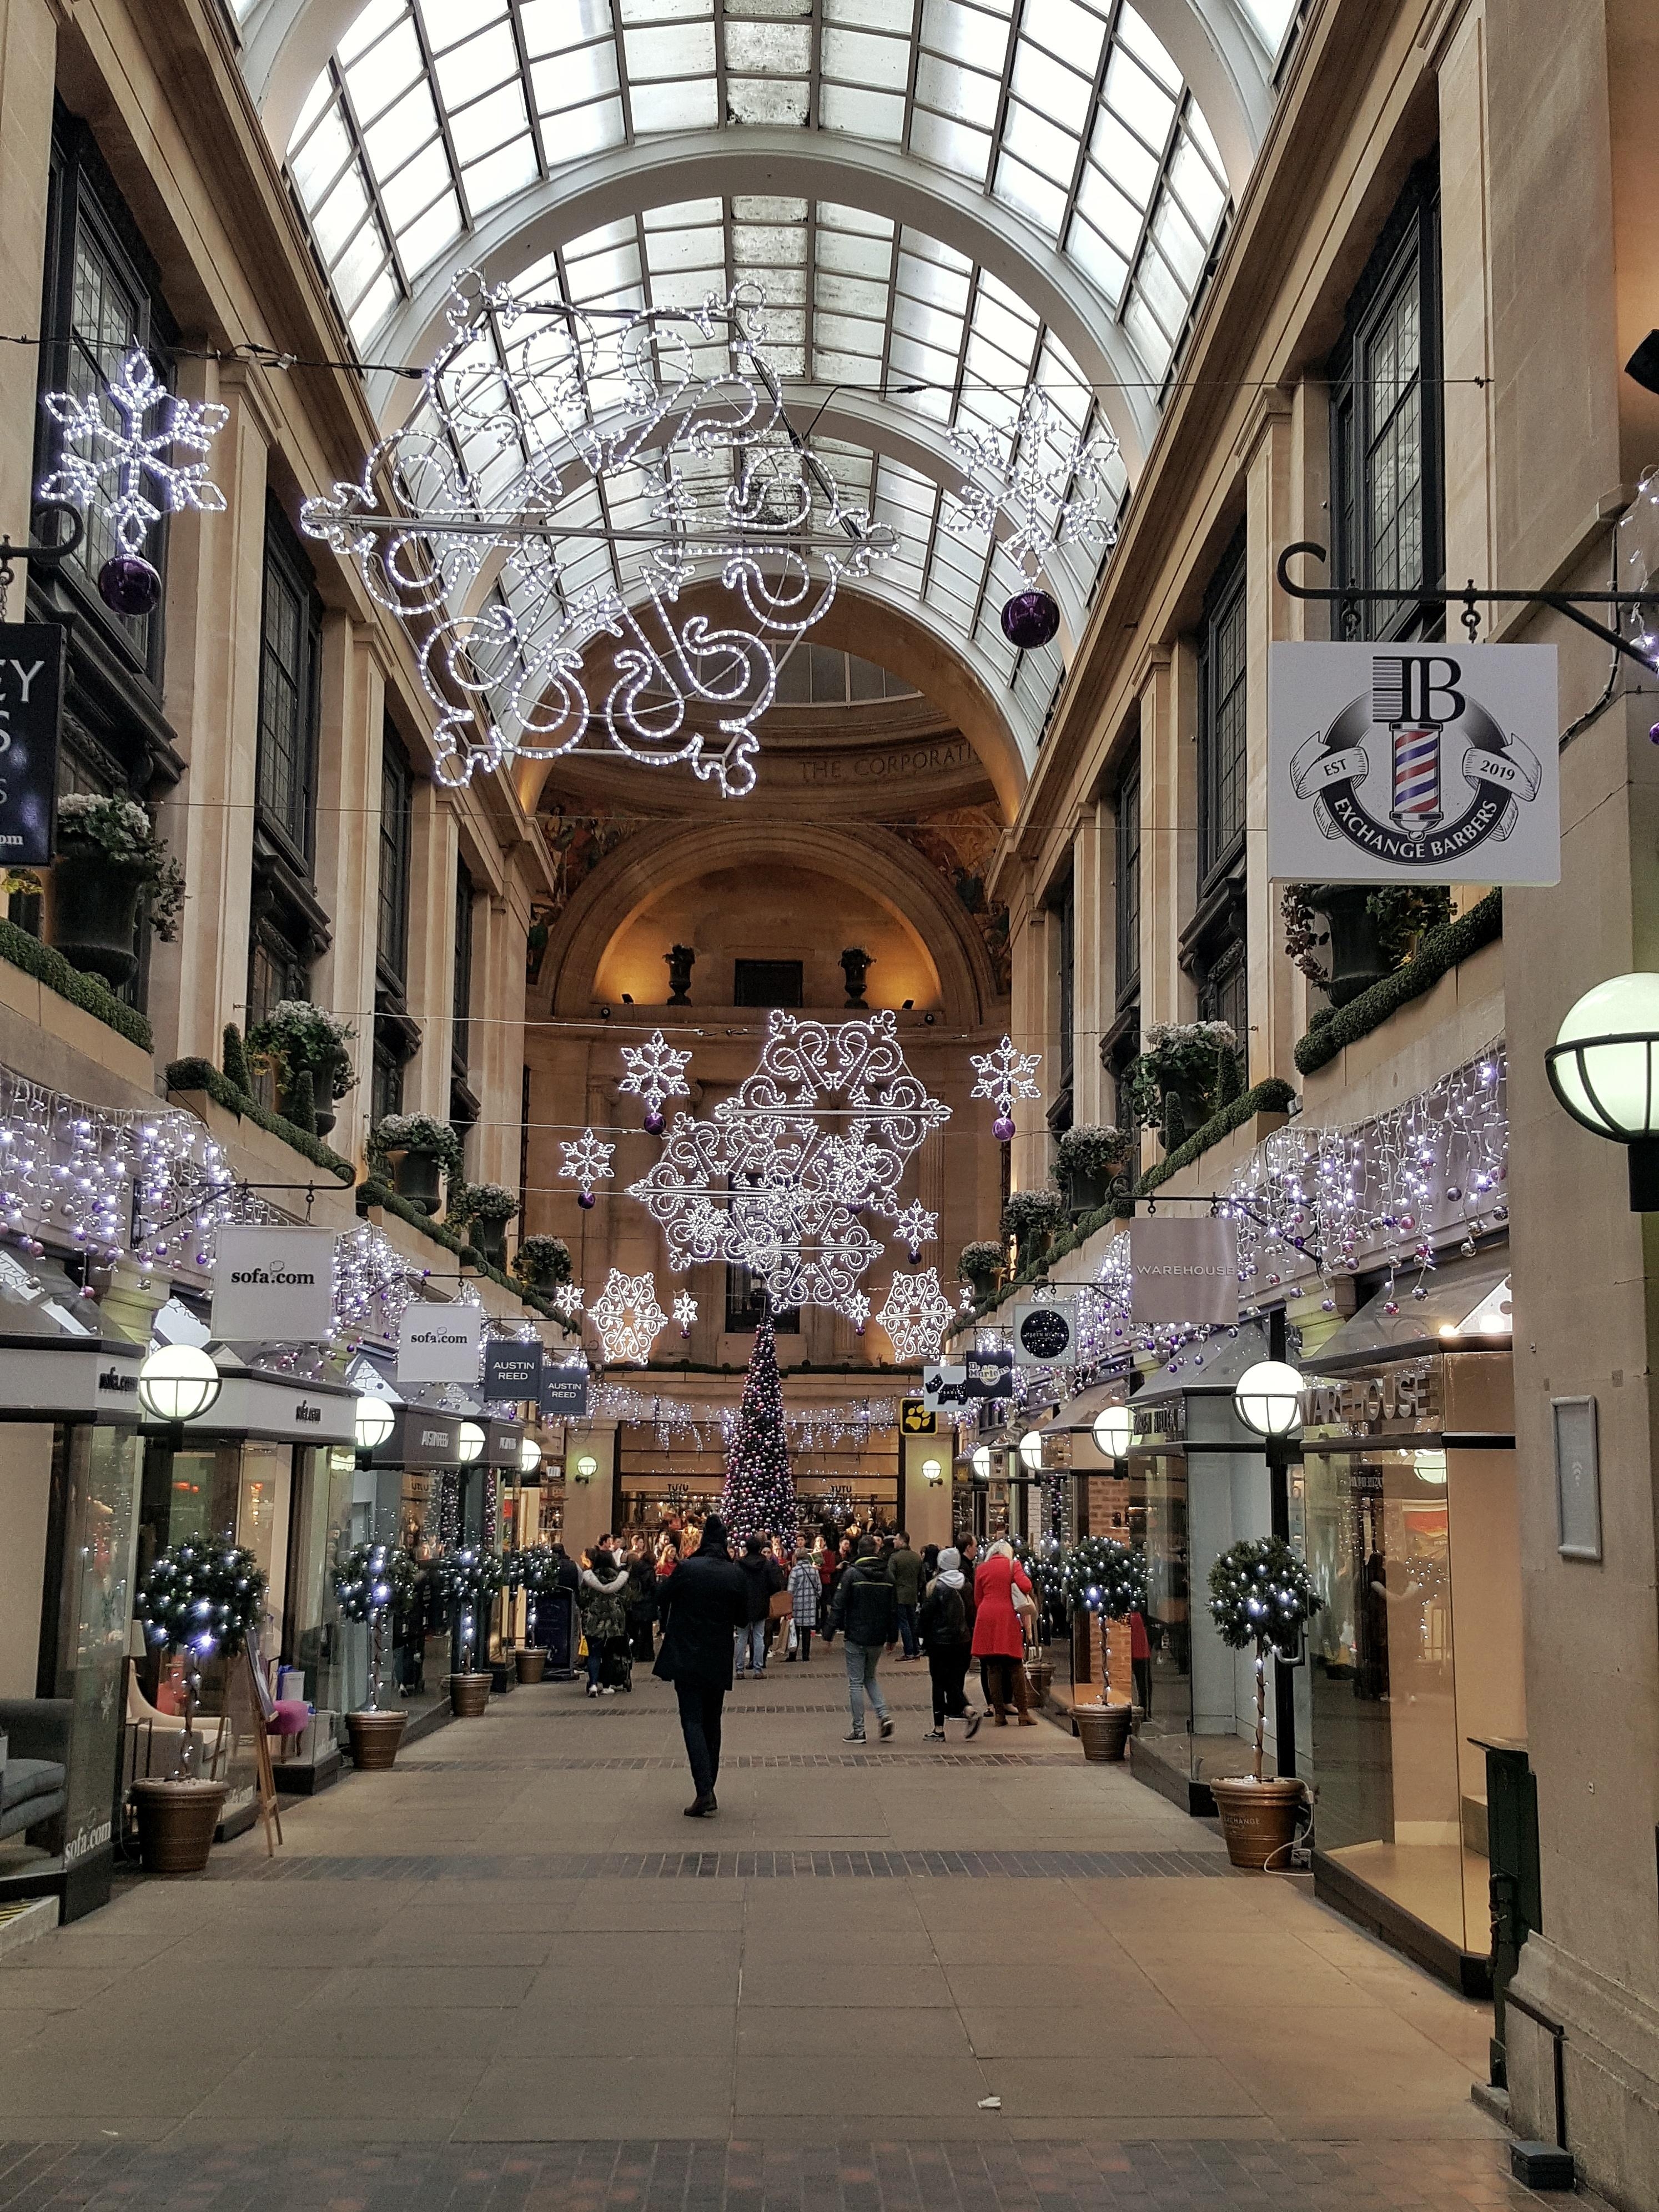 Weihnachten in Nottingham #weihnachten #xmas #weihnachtszeit #england